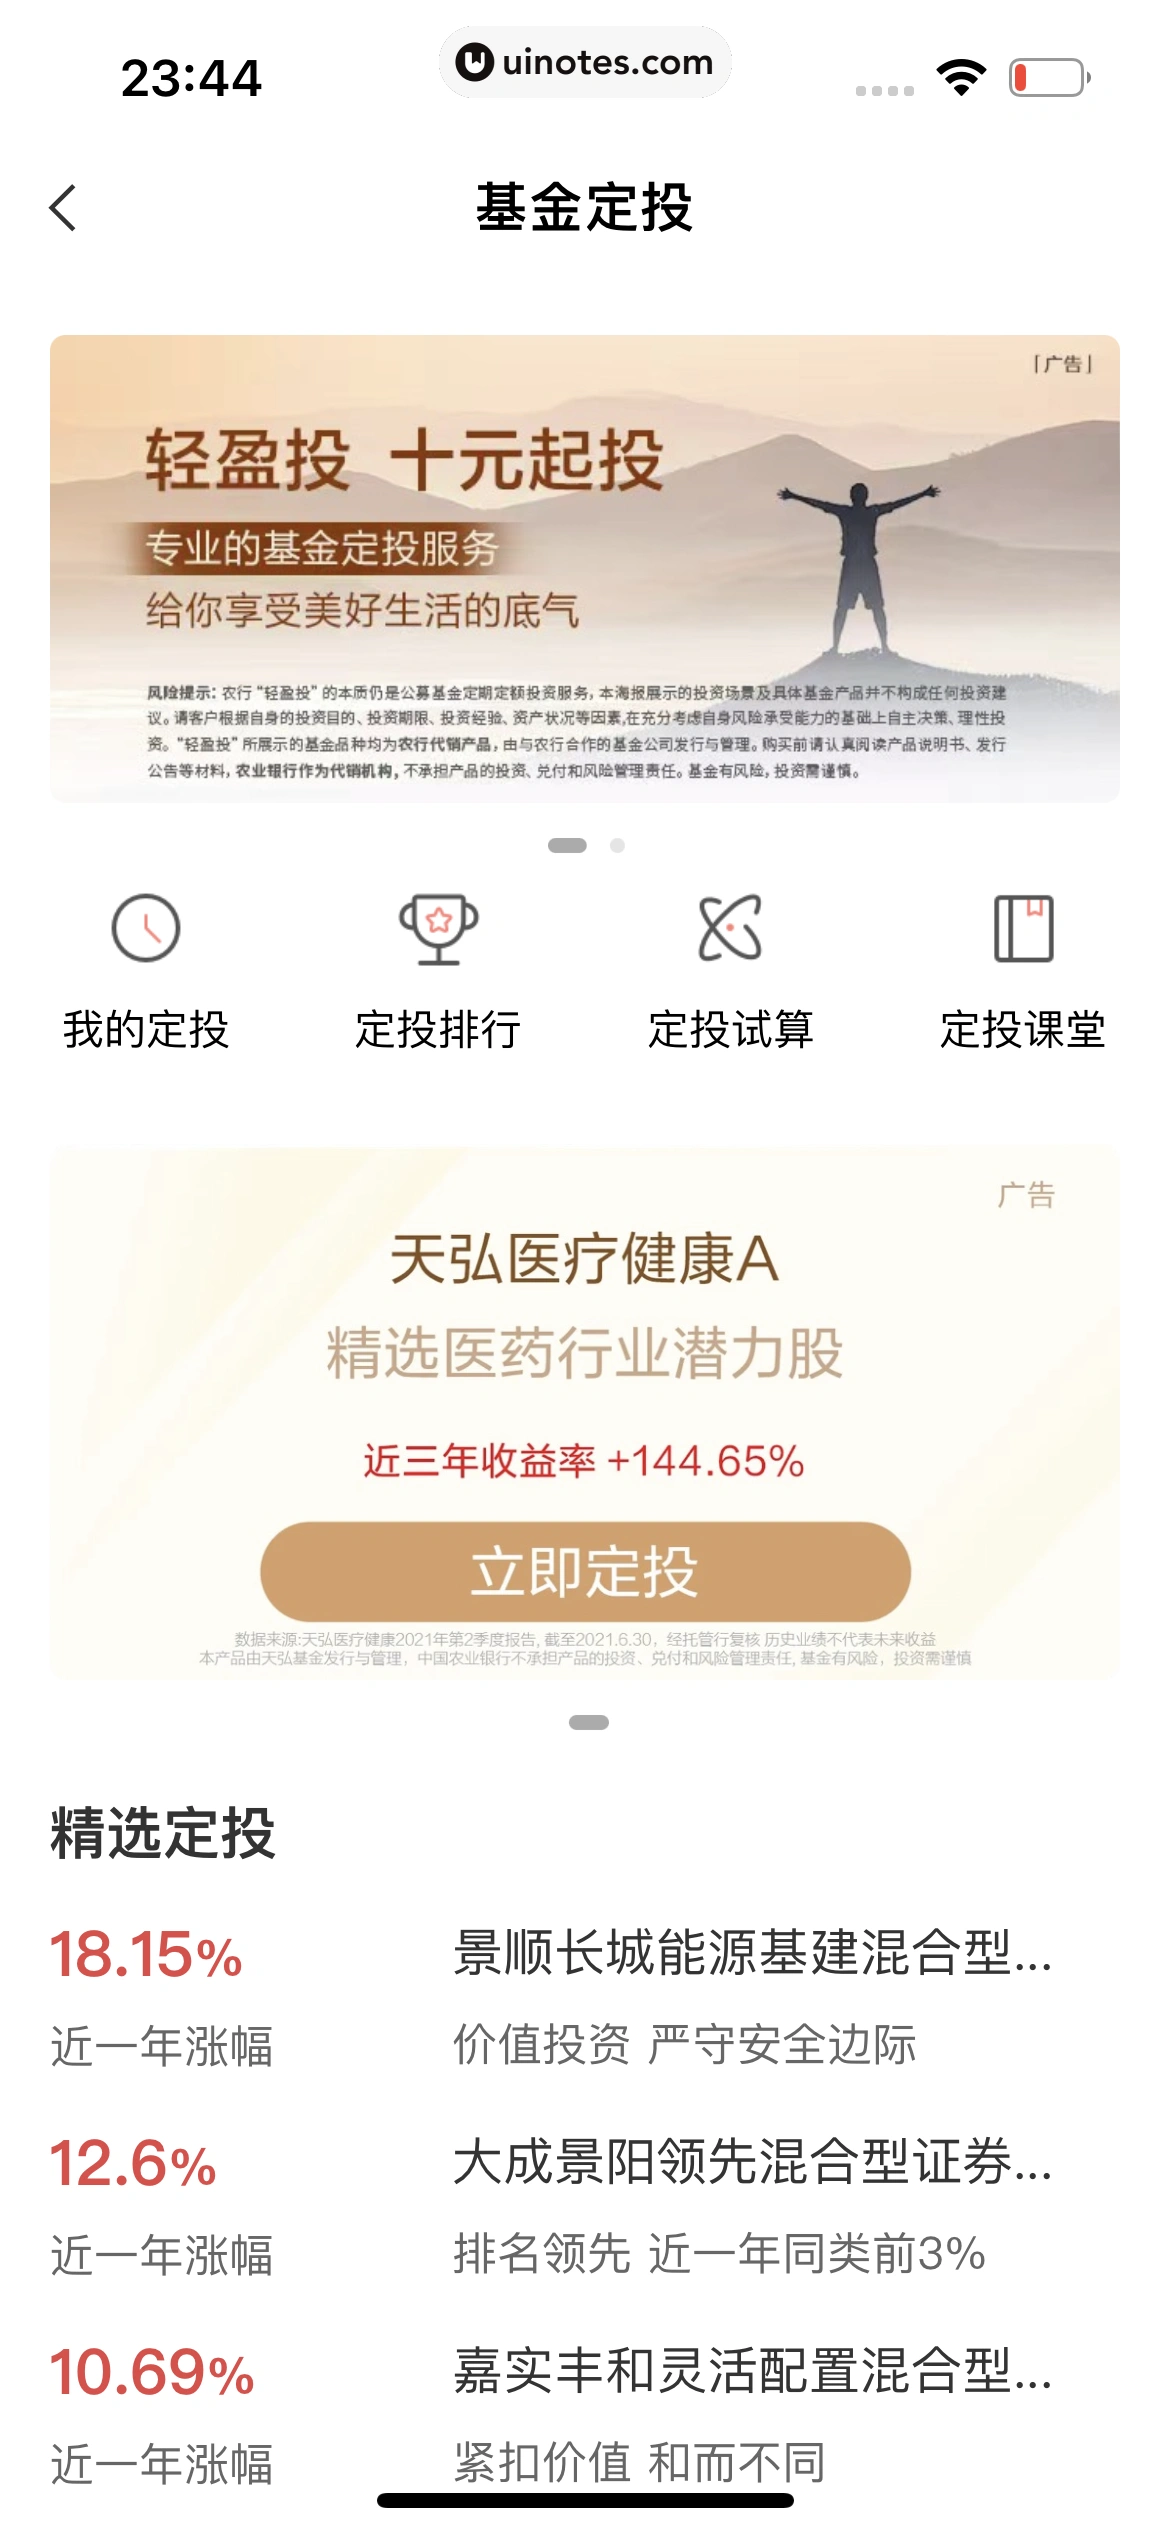 中国农业银行 App 截图 148 - UI Notes